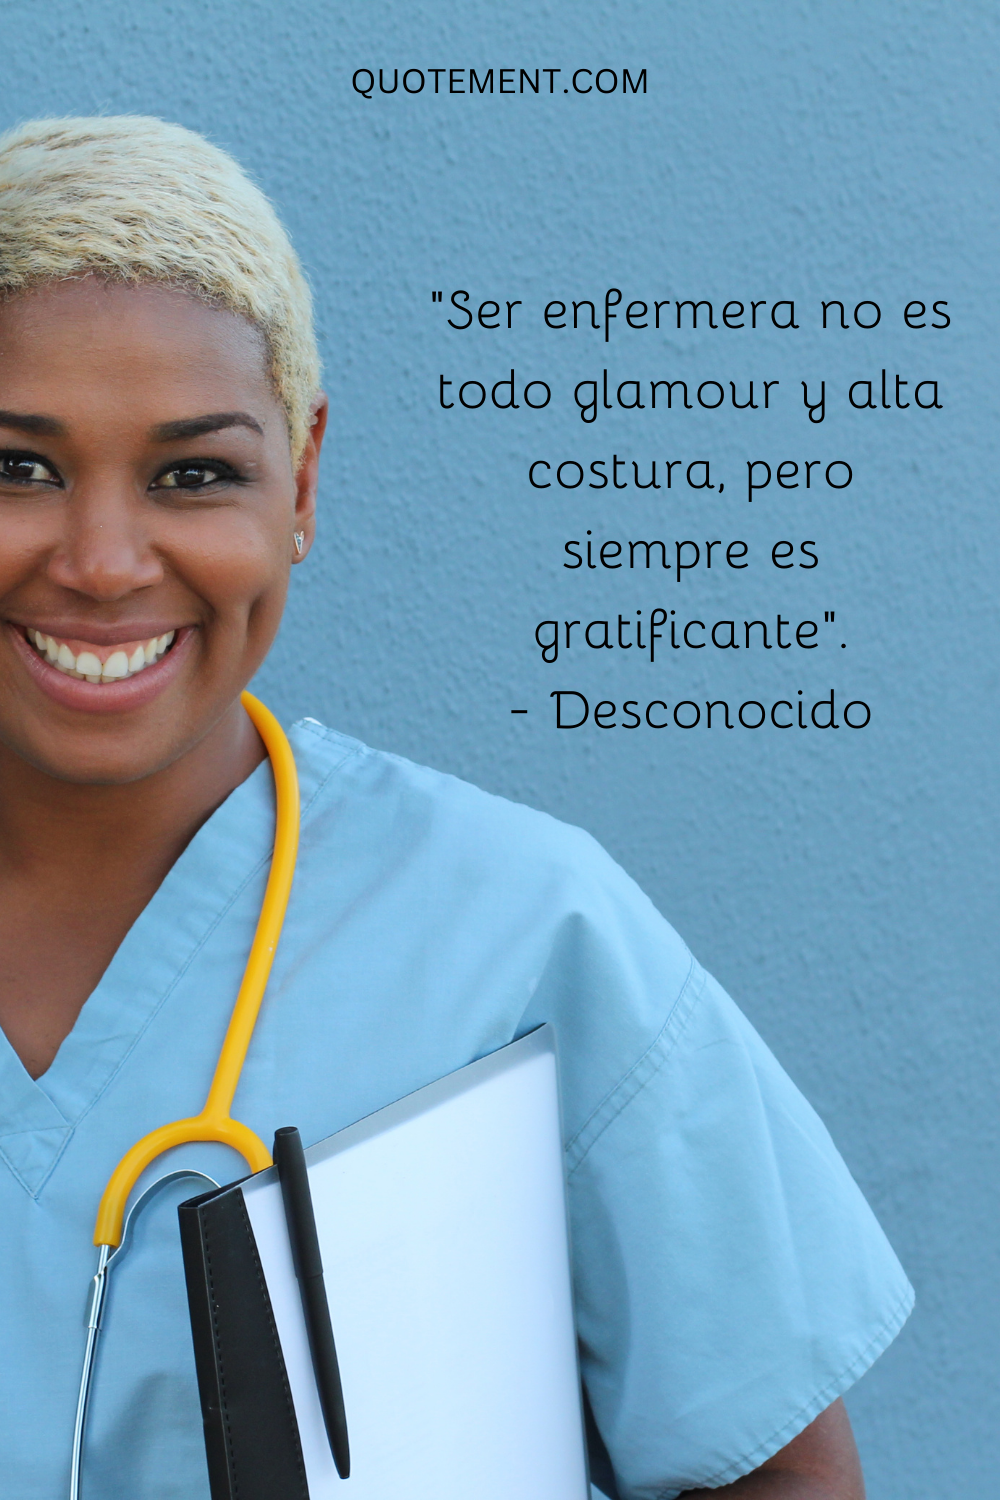 "Ser enfermera no es todo glamour y alta costura, pero siempre es gratificante". - Desconocido